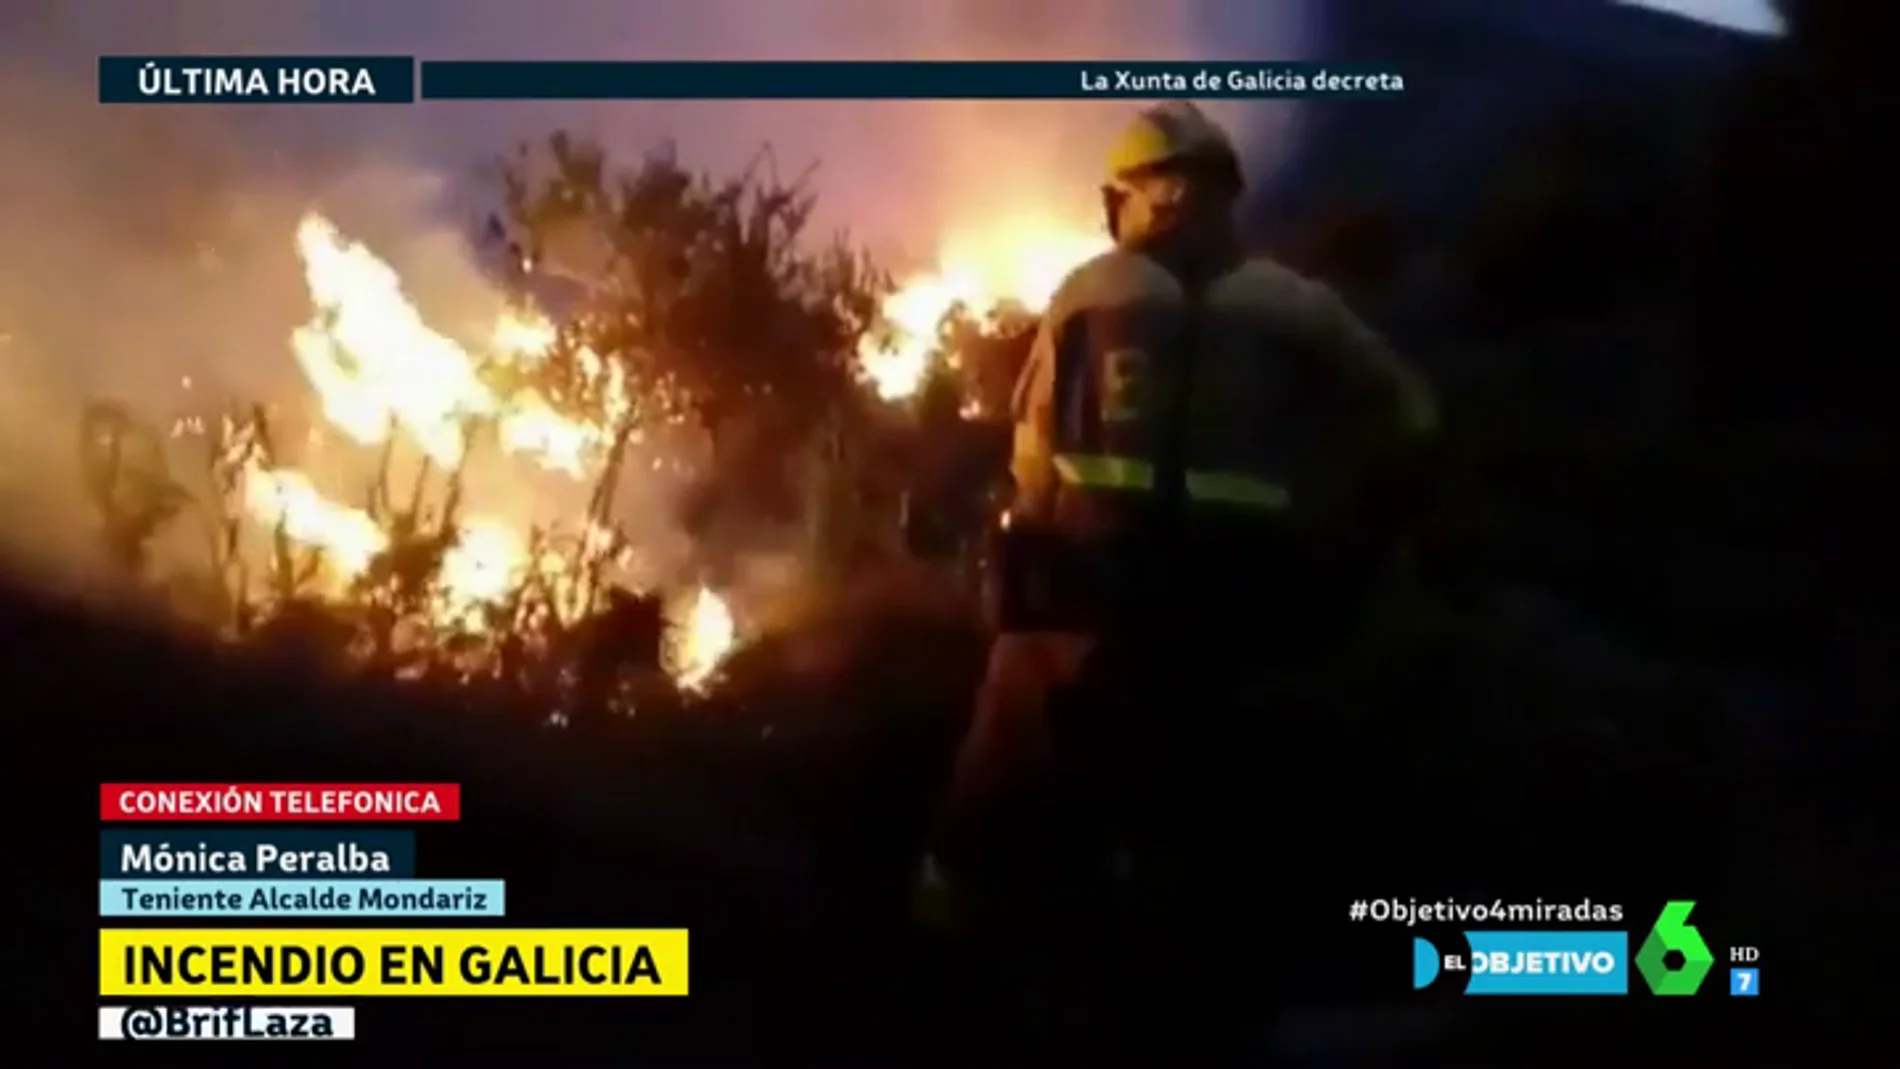 La teniente de alcalde de Mondariz, del incendio en Pontevedra: "No ha habido medios aéreos suficientes"